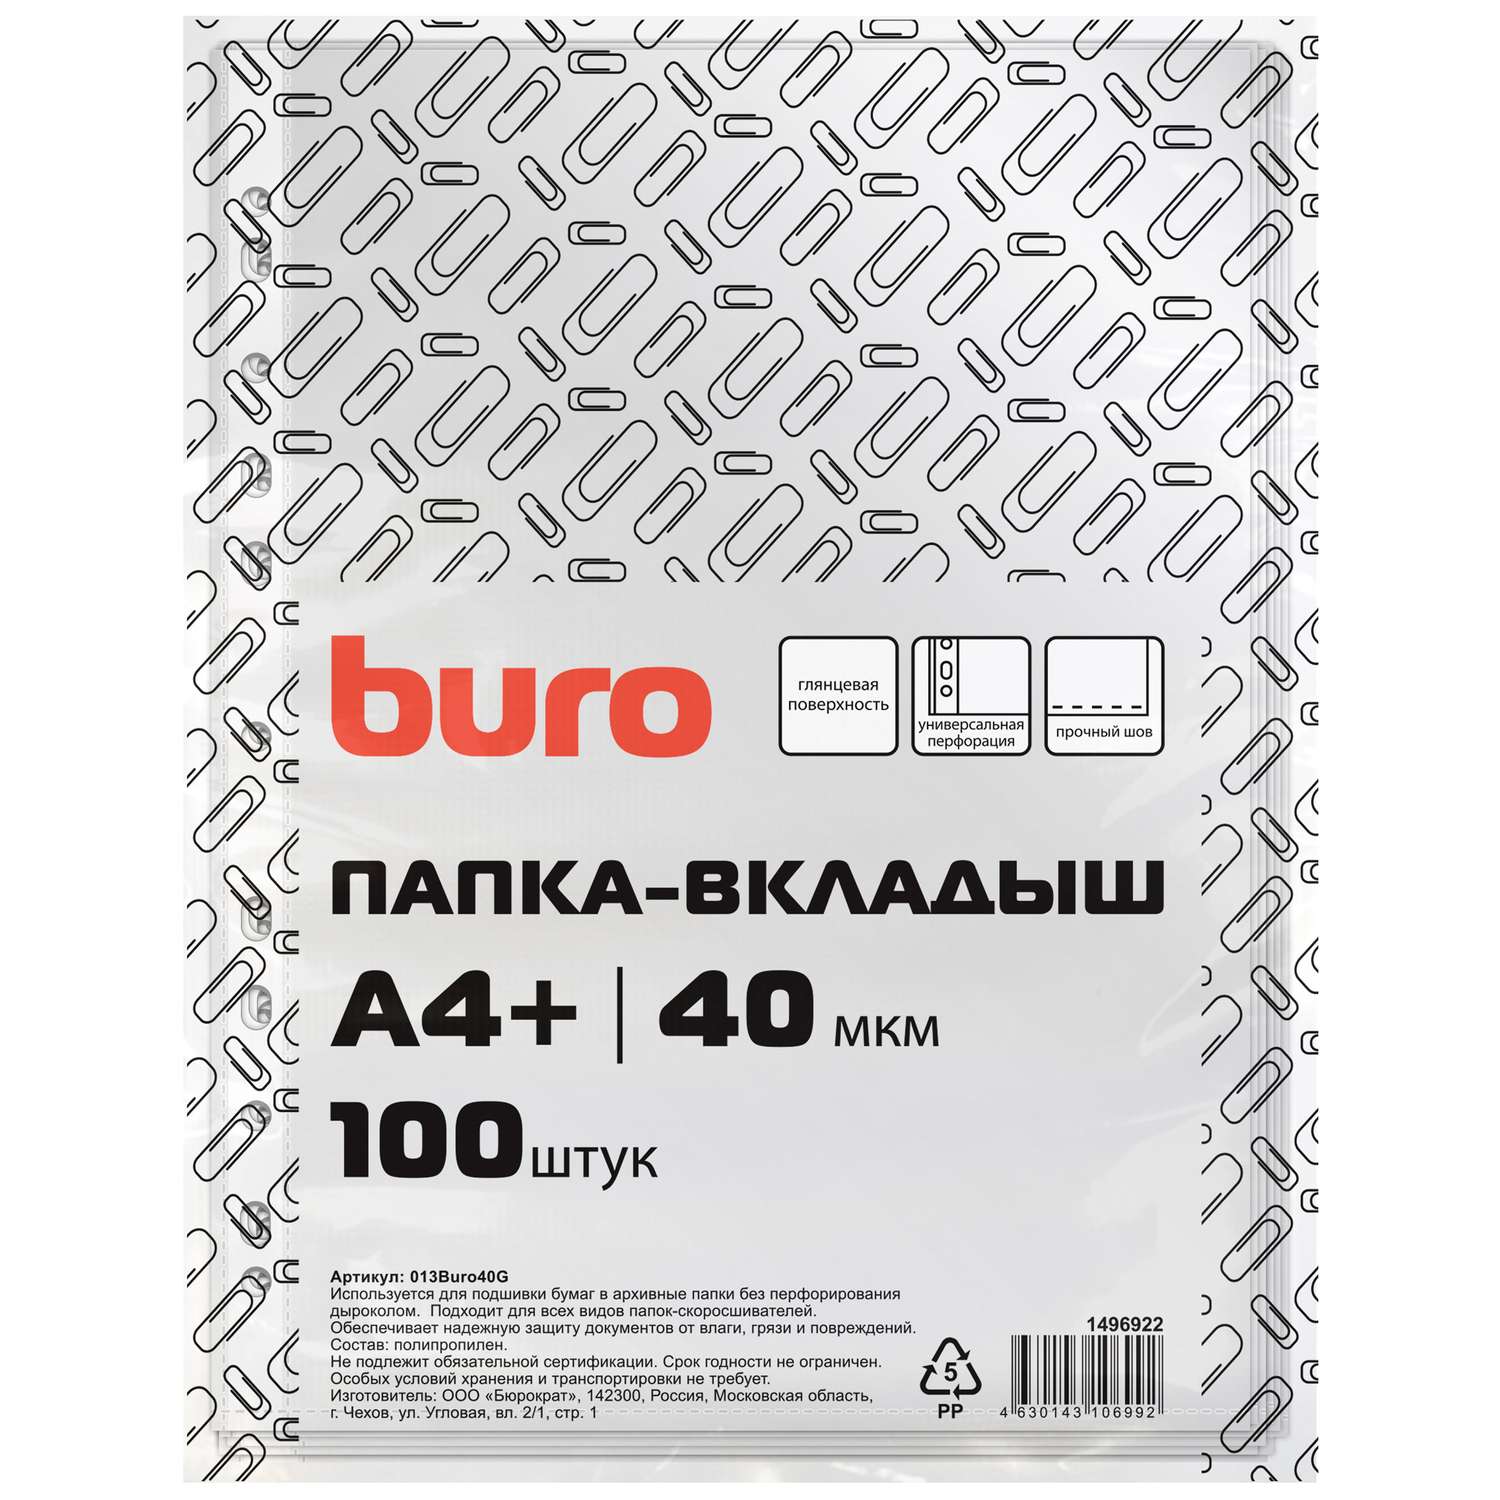 Файлы-вкладыши Buro глянцевые А4+ 40мкм упаковка 100 шт - фото 1